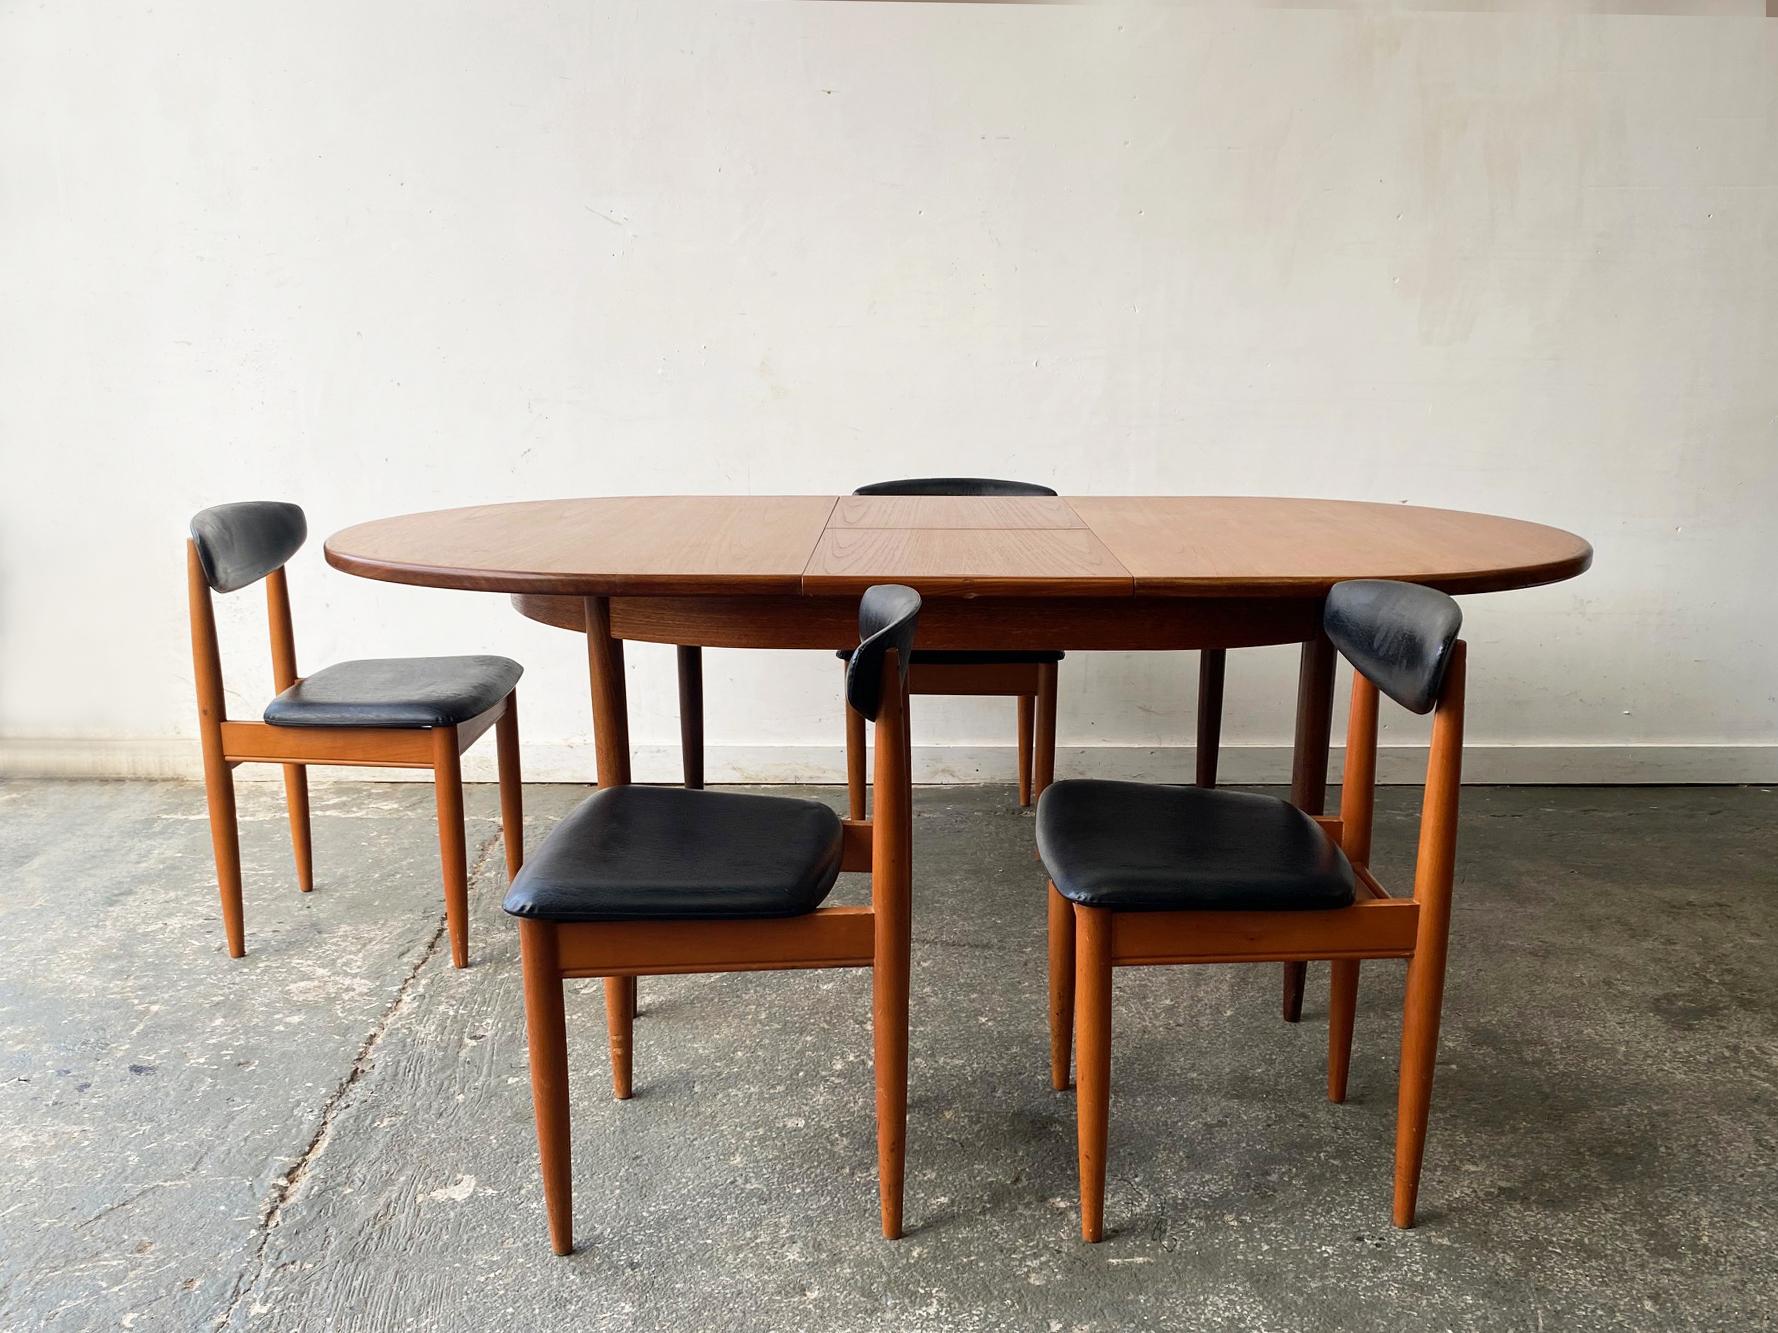 Une table de salle à manger à rallonge G-Plan de style moderne du milieu du siècle, assortie de 4 chaises de salle à manger de Schreiber Furniture.

Une table classique G-Plan 